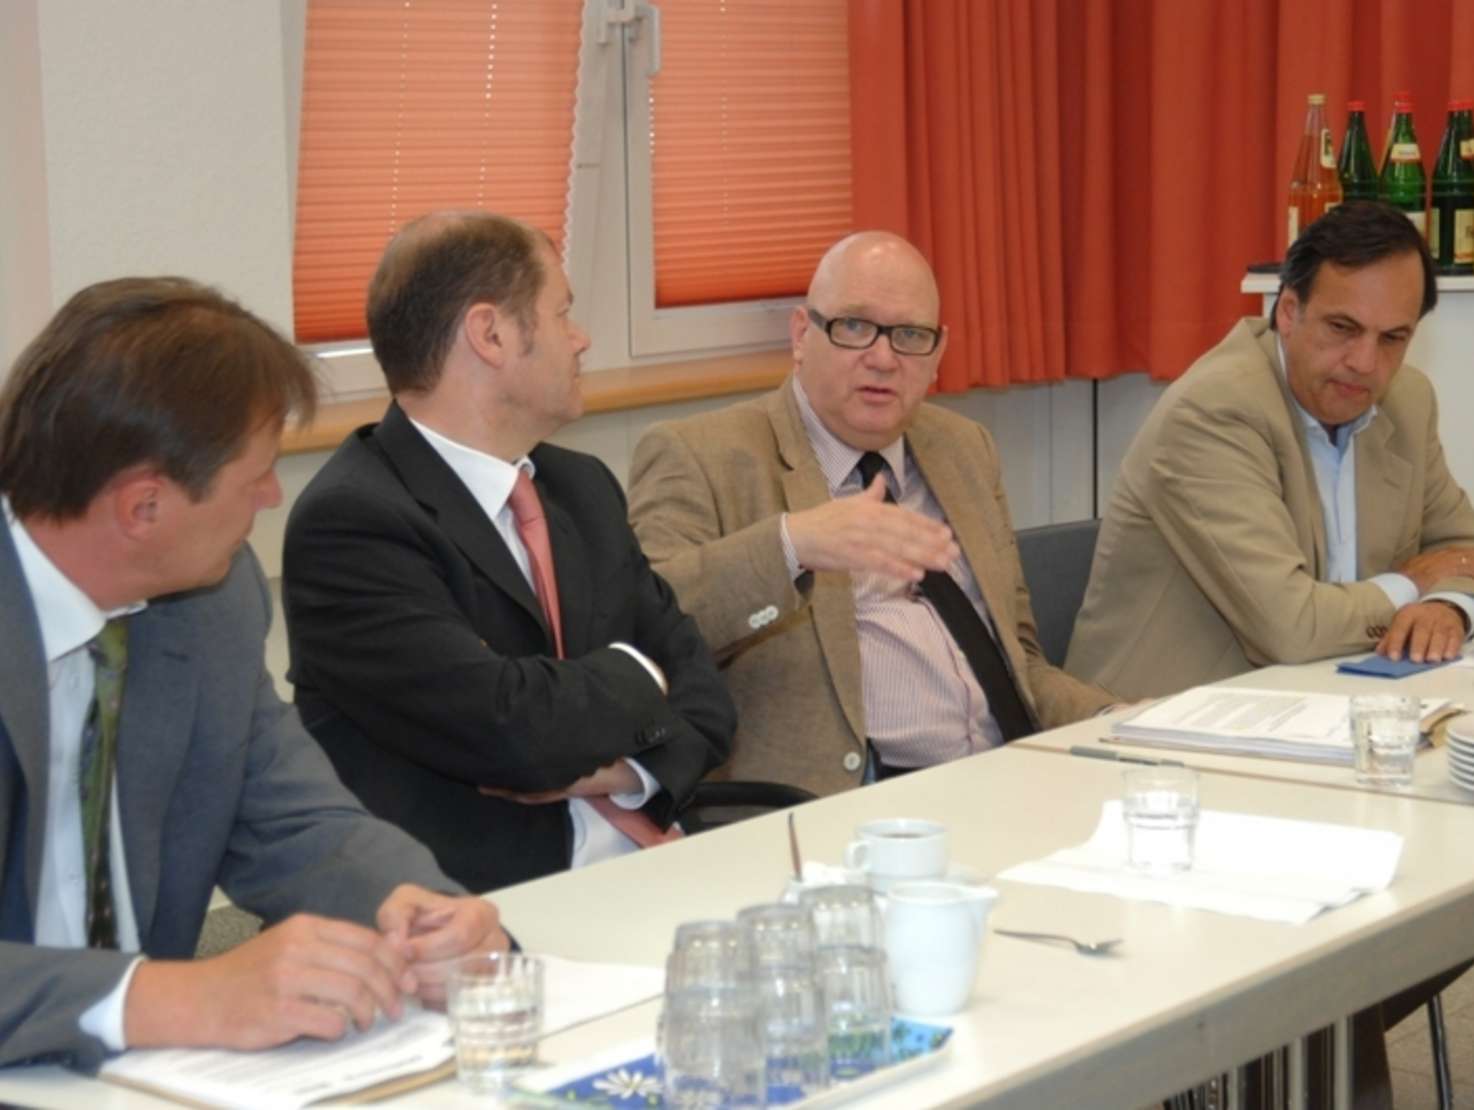 v.l.n.r.: Stefan Rehm (Diakonisches Werk), Bundesarbeitsminister Olaf Scholz, Wolfgang Rose (Ver.di), Knut Fleckenstein (ASB)